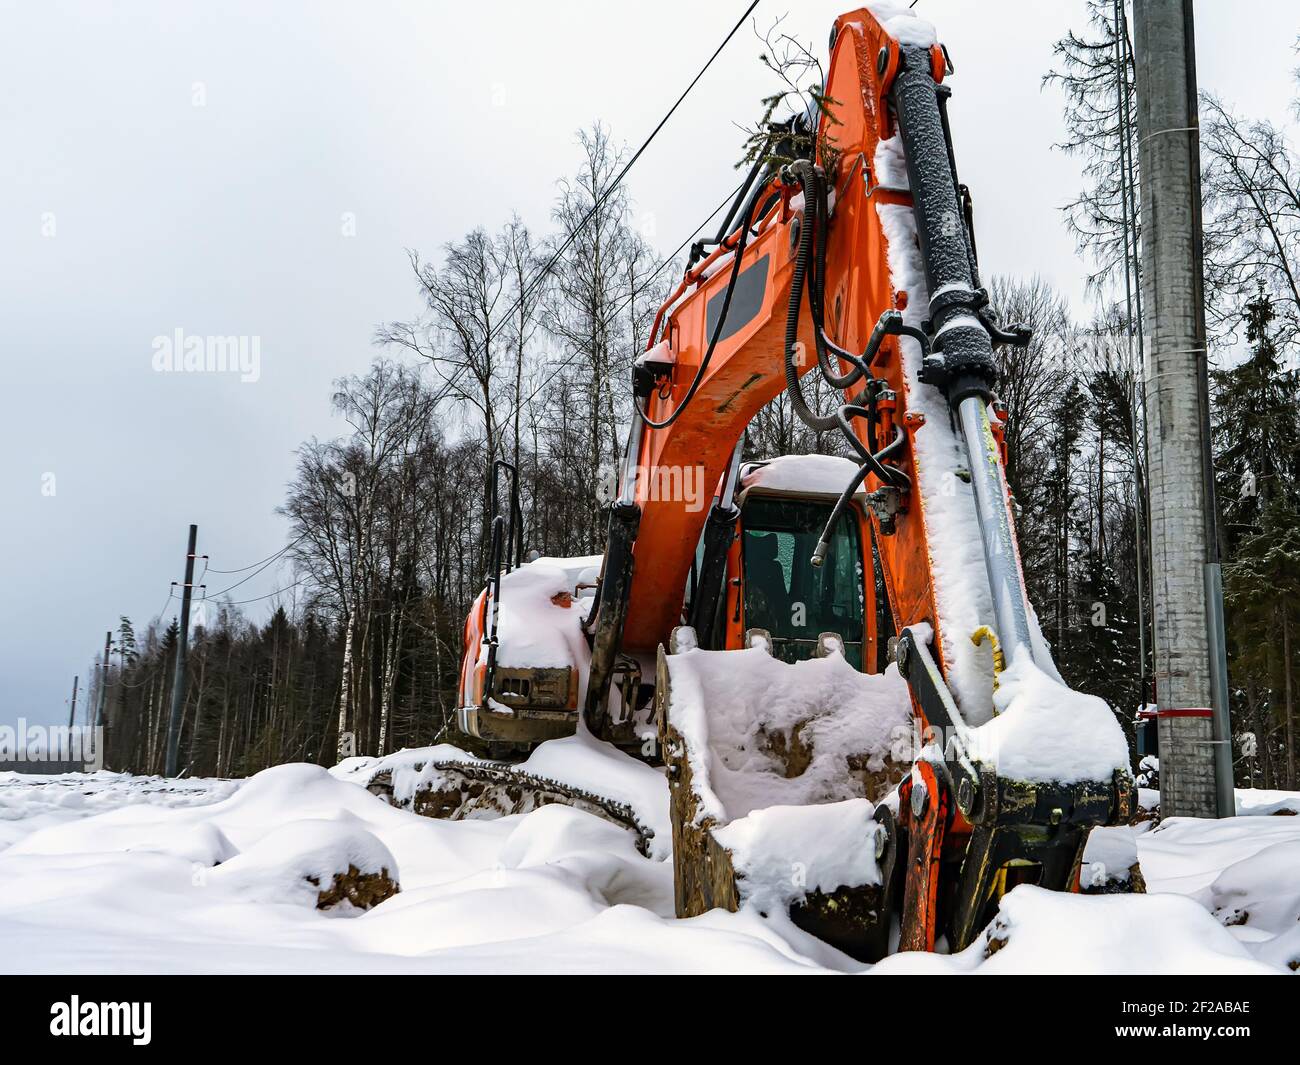 Gran excavadora naranja cubierta de nieve. Equipos de construcción abandonados que no funcionan rotos. Foto de stock